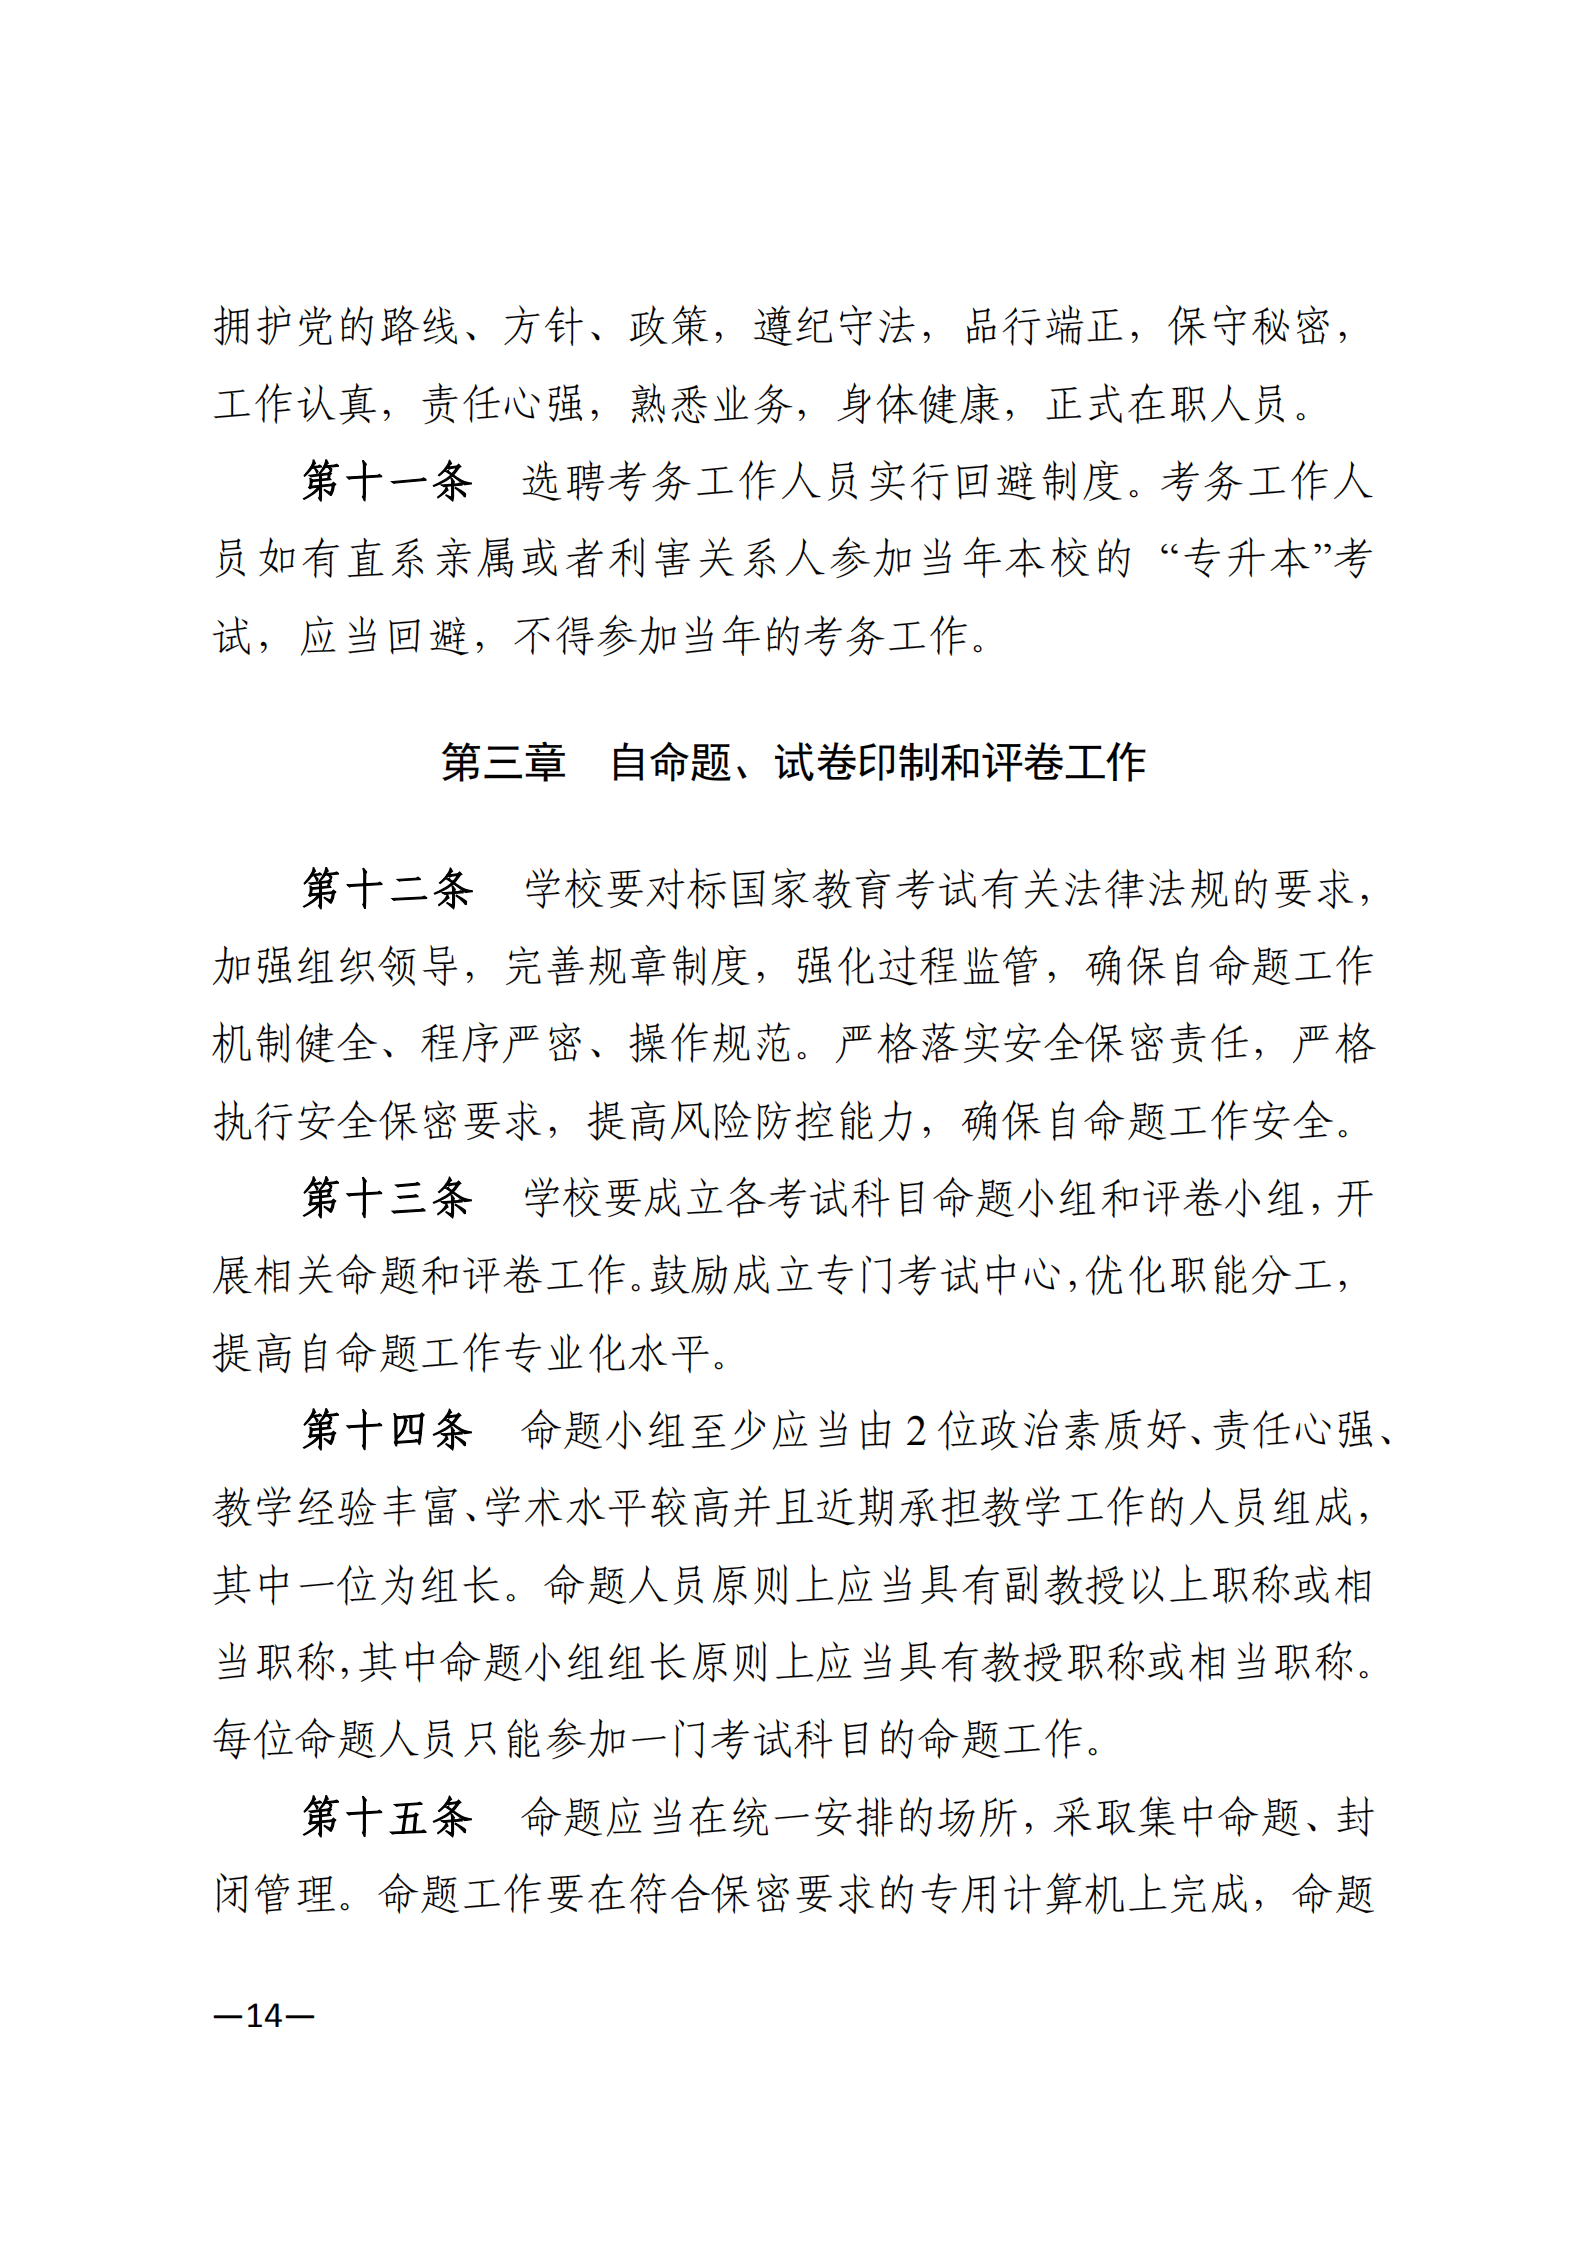 3_湘教发〔2021〕2号 关于印发《2021年湖南省普通高等教育“专升本”考试招生工作实施方案》的通知_13.png